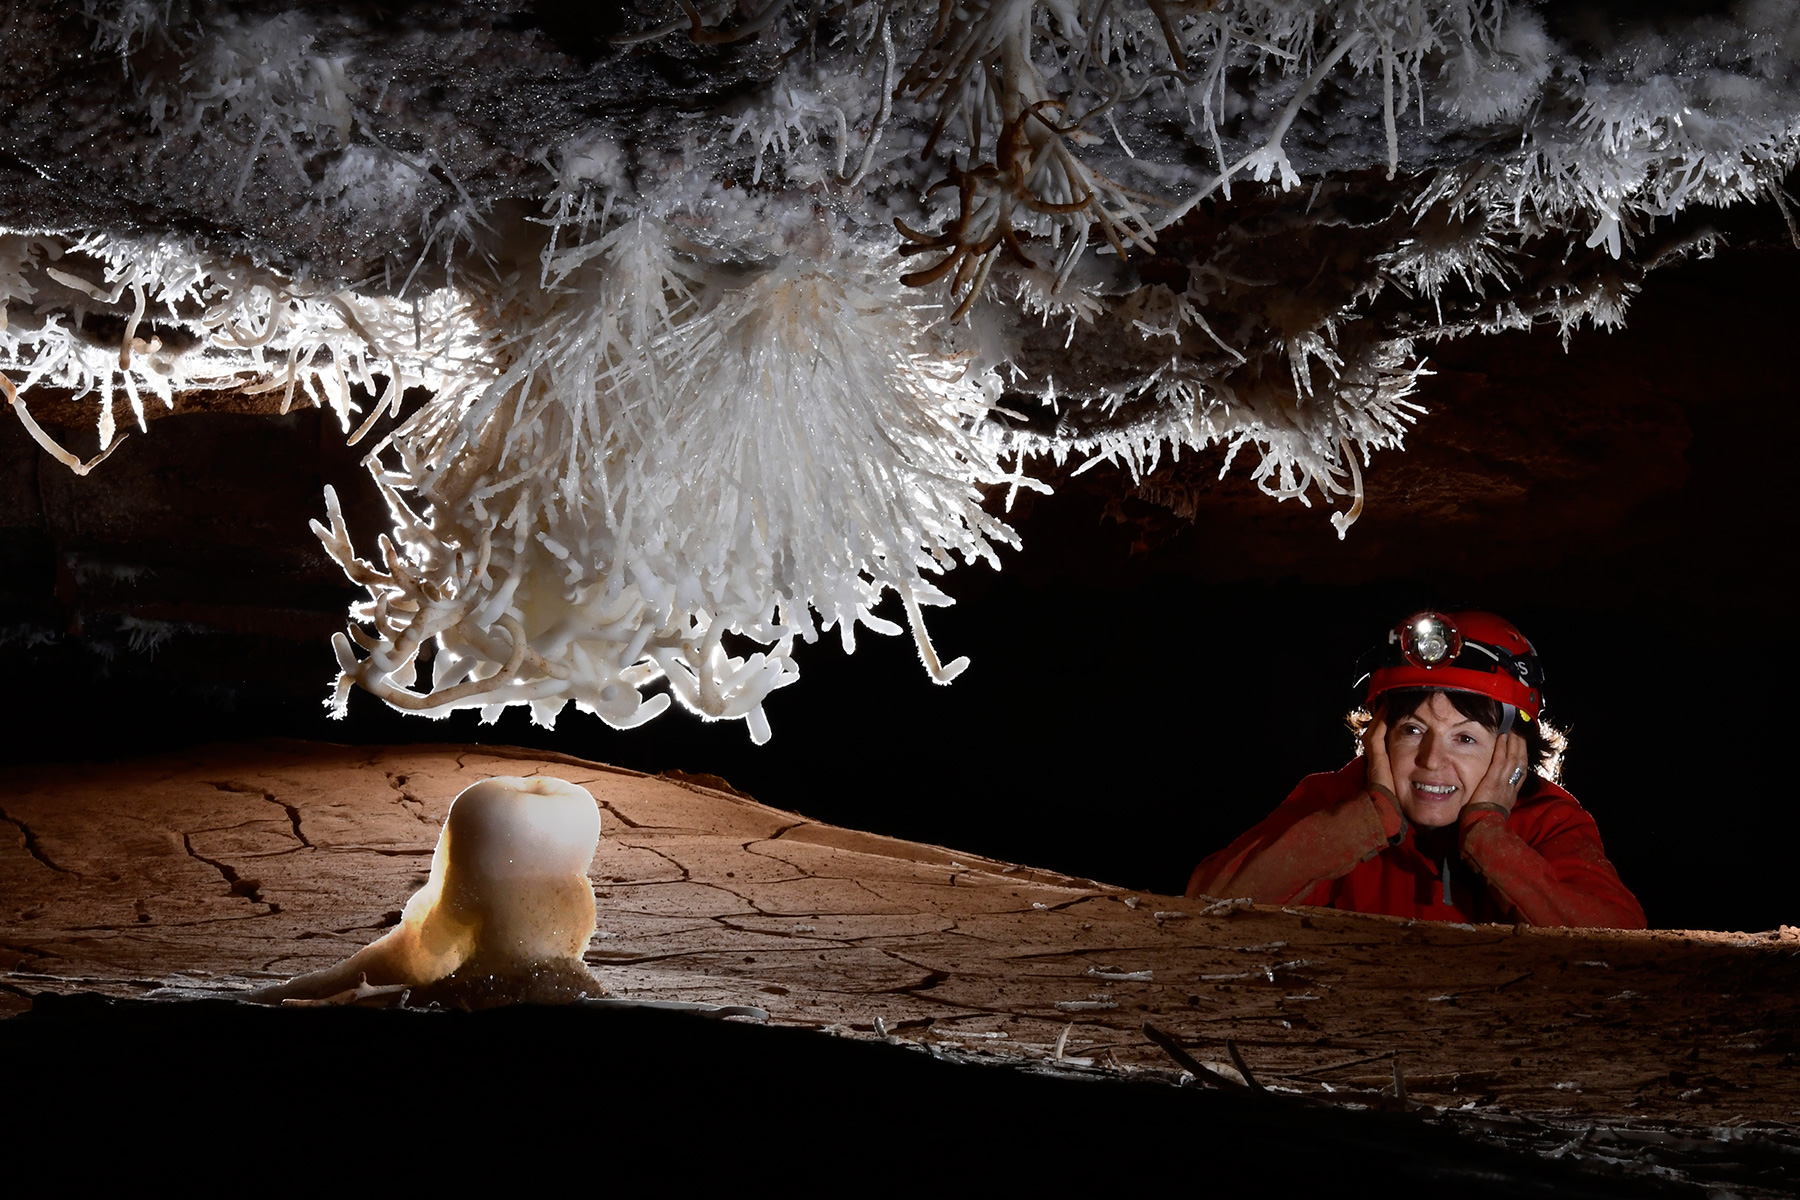 Breezeaway Cave (USA - Colorado) - Spéléo regardant un gros bouquet échevelé d'aragonite au plafond ("Tesla Coil") surmontant une stalagmite